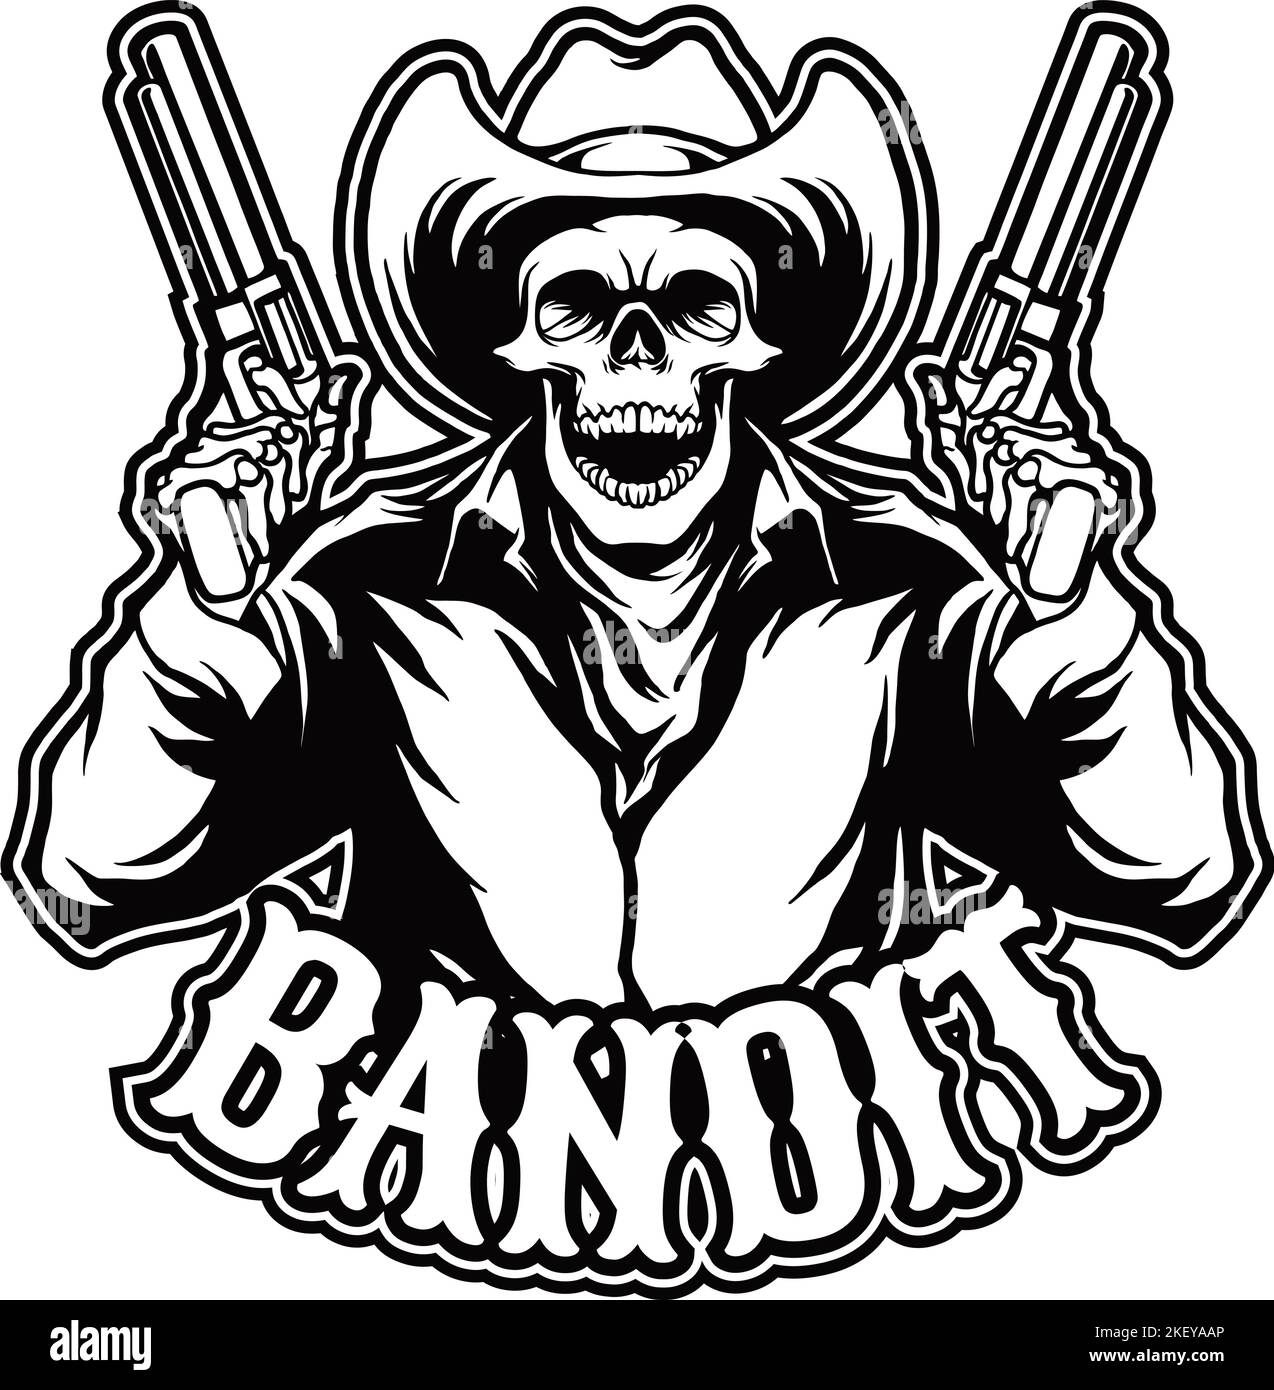 Crâne Cowboy Bandit Monochrome logo illustrations vectorielles pour votre travail logo, t-shirt, autocollants et étiquettes, poster, cartes de vœux Illustration de Vecteur